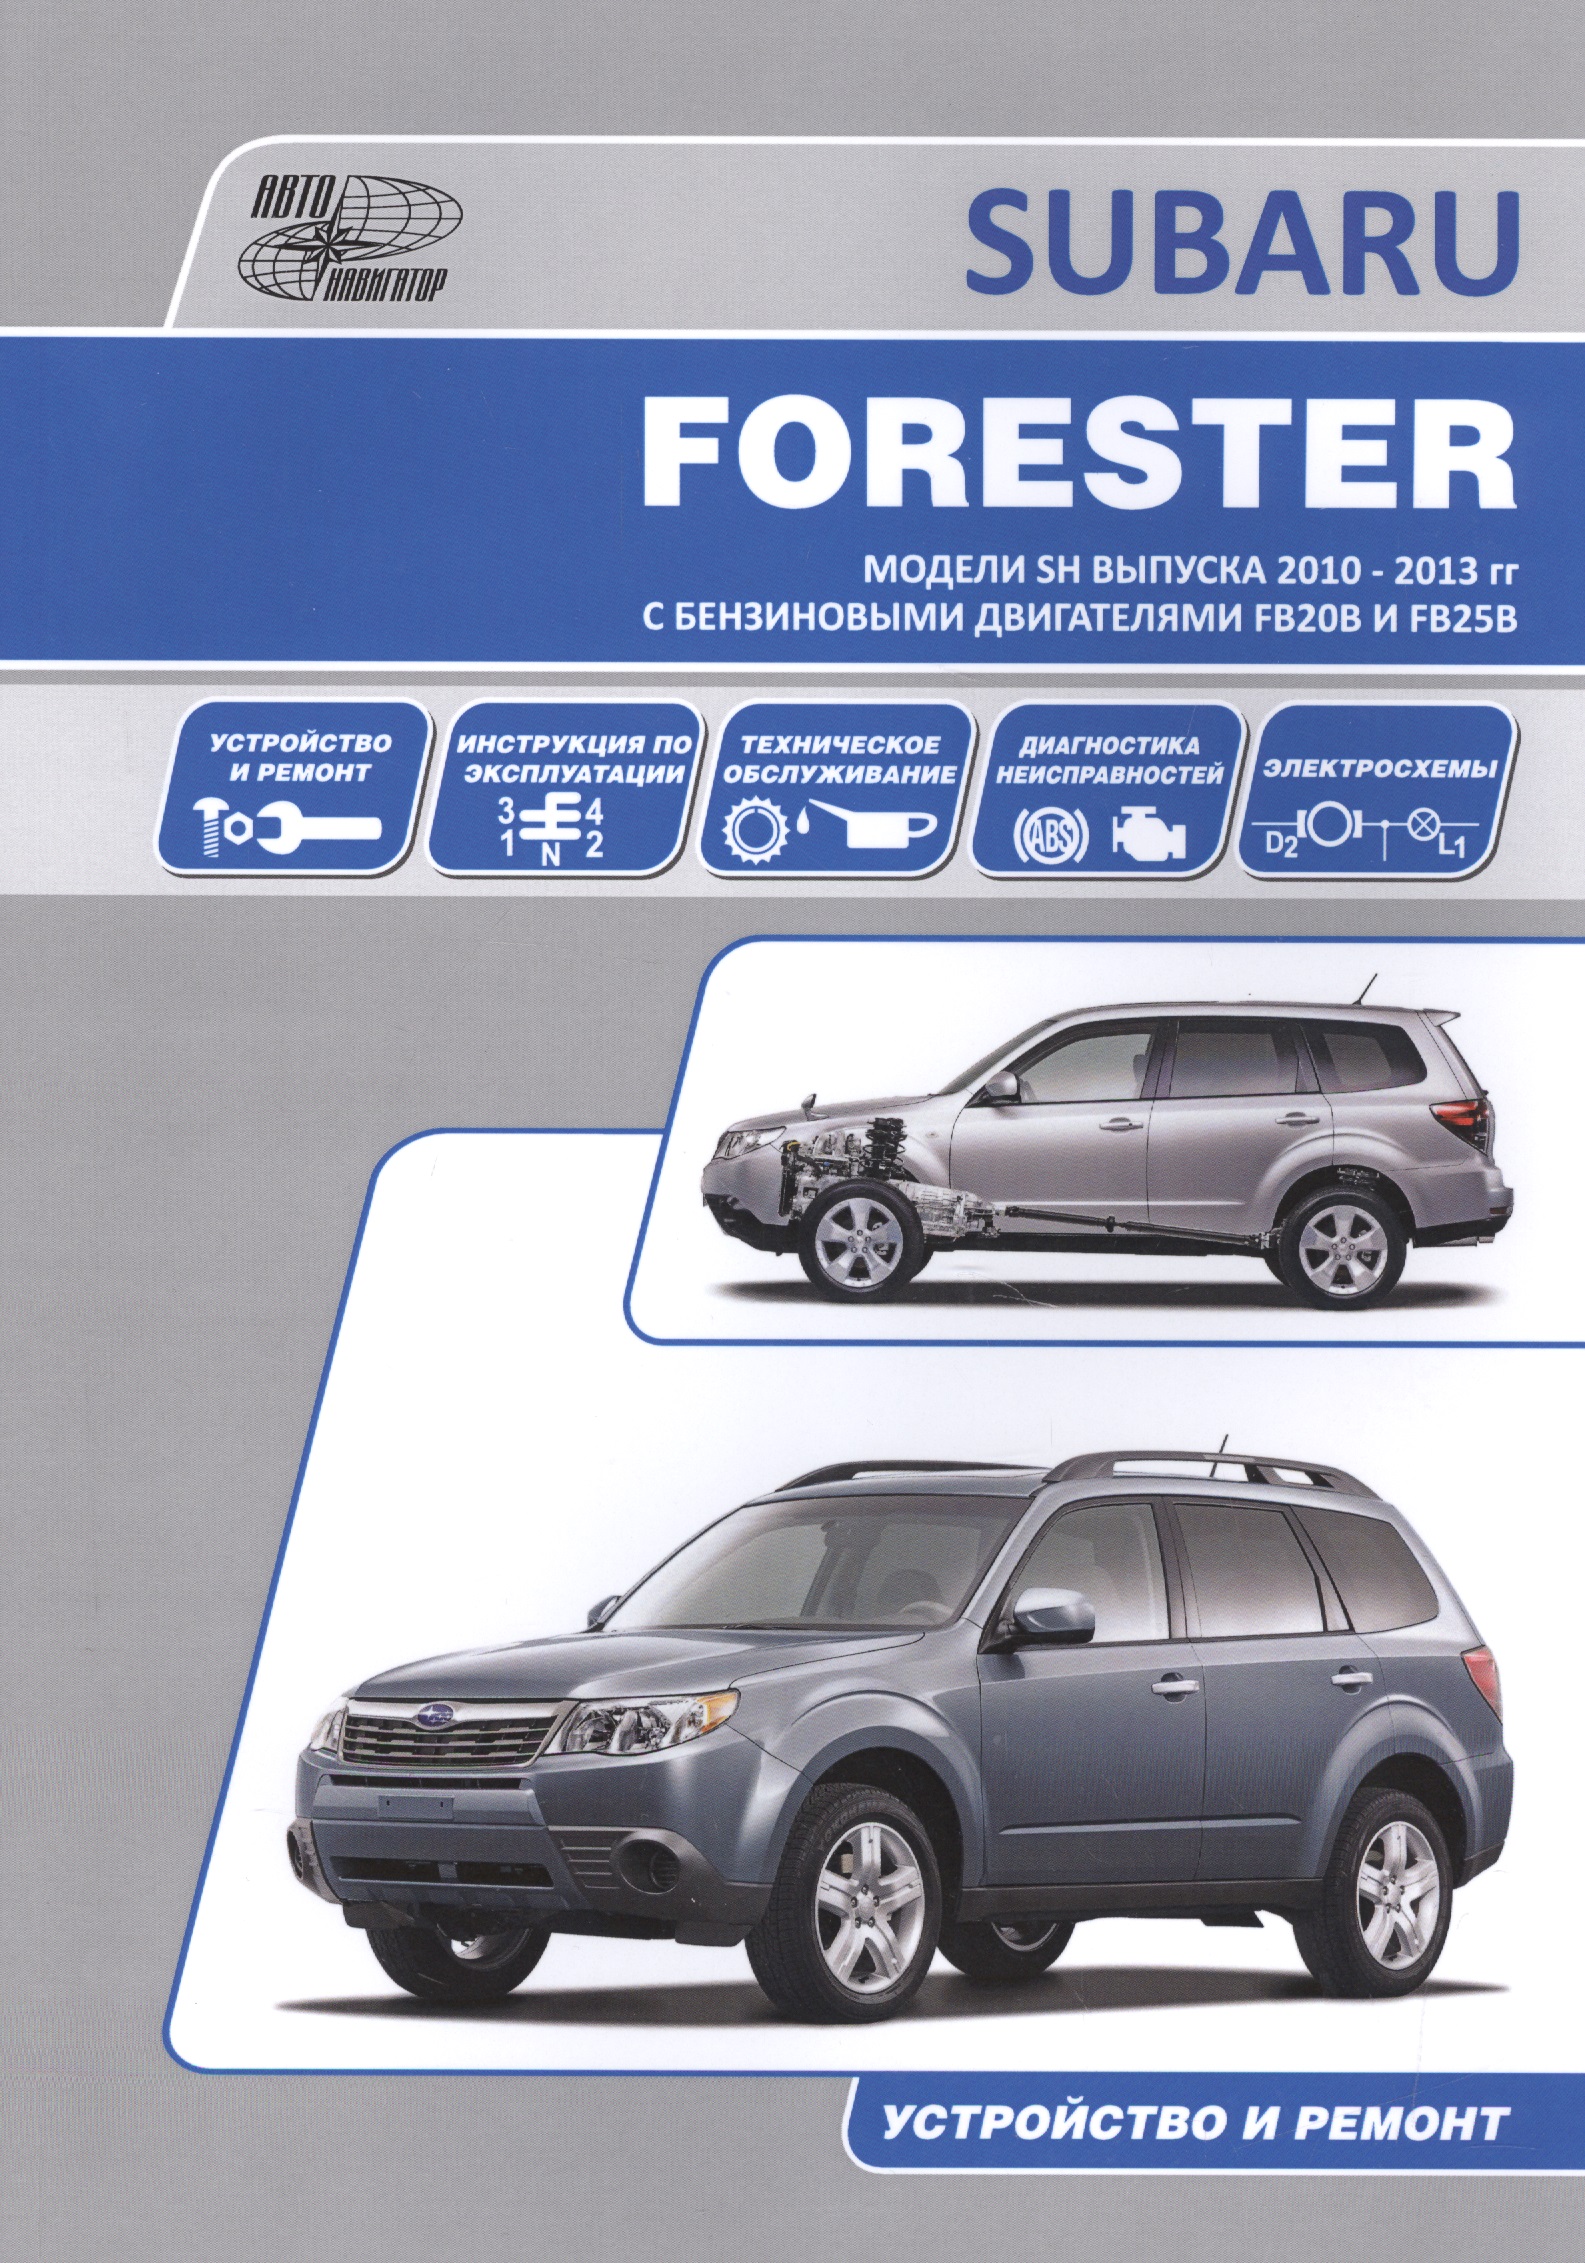 Subaru Forester Устройство и ремонт Модели и SH выпуска 2010-2013 гг с бензиновыми двигателями FB20B и FB25B Автонавигатор - фото 1